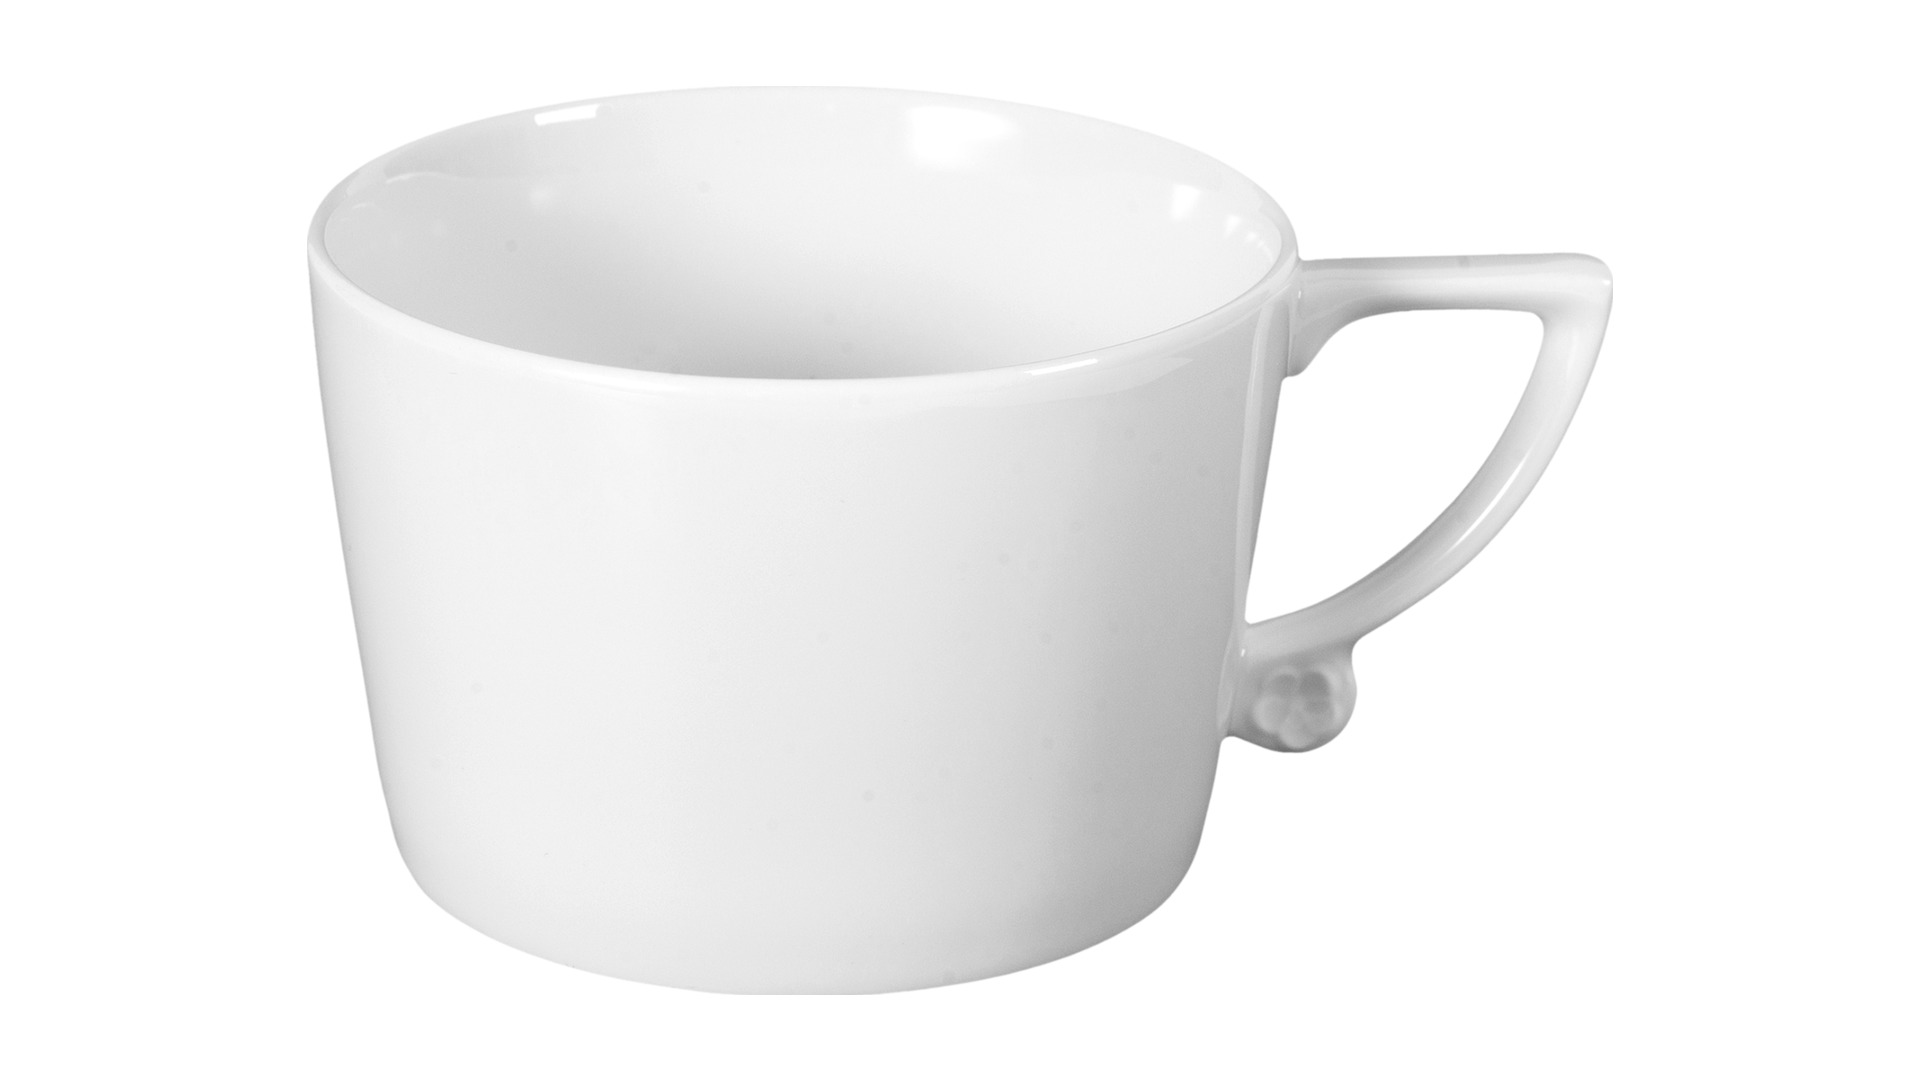 Чашка для капучино с блюдцем Meissen Королевский цвет форма No 41, 200 мл